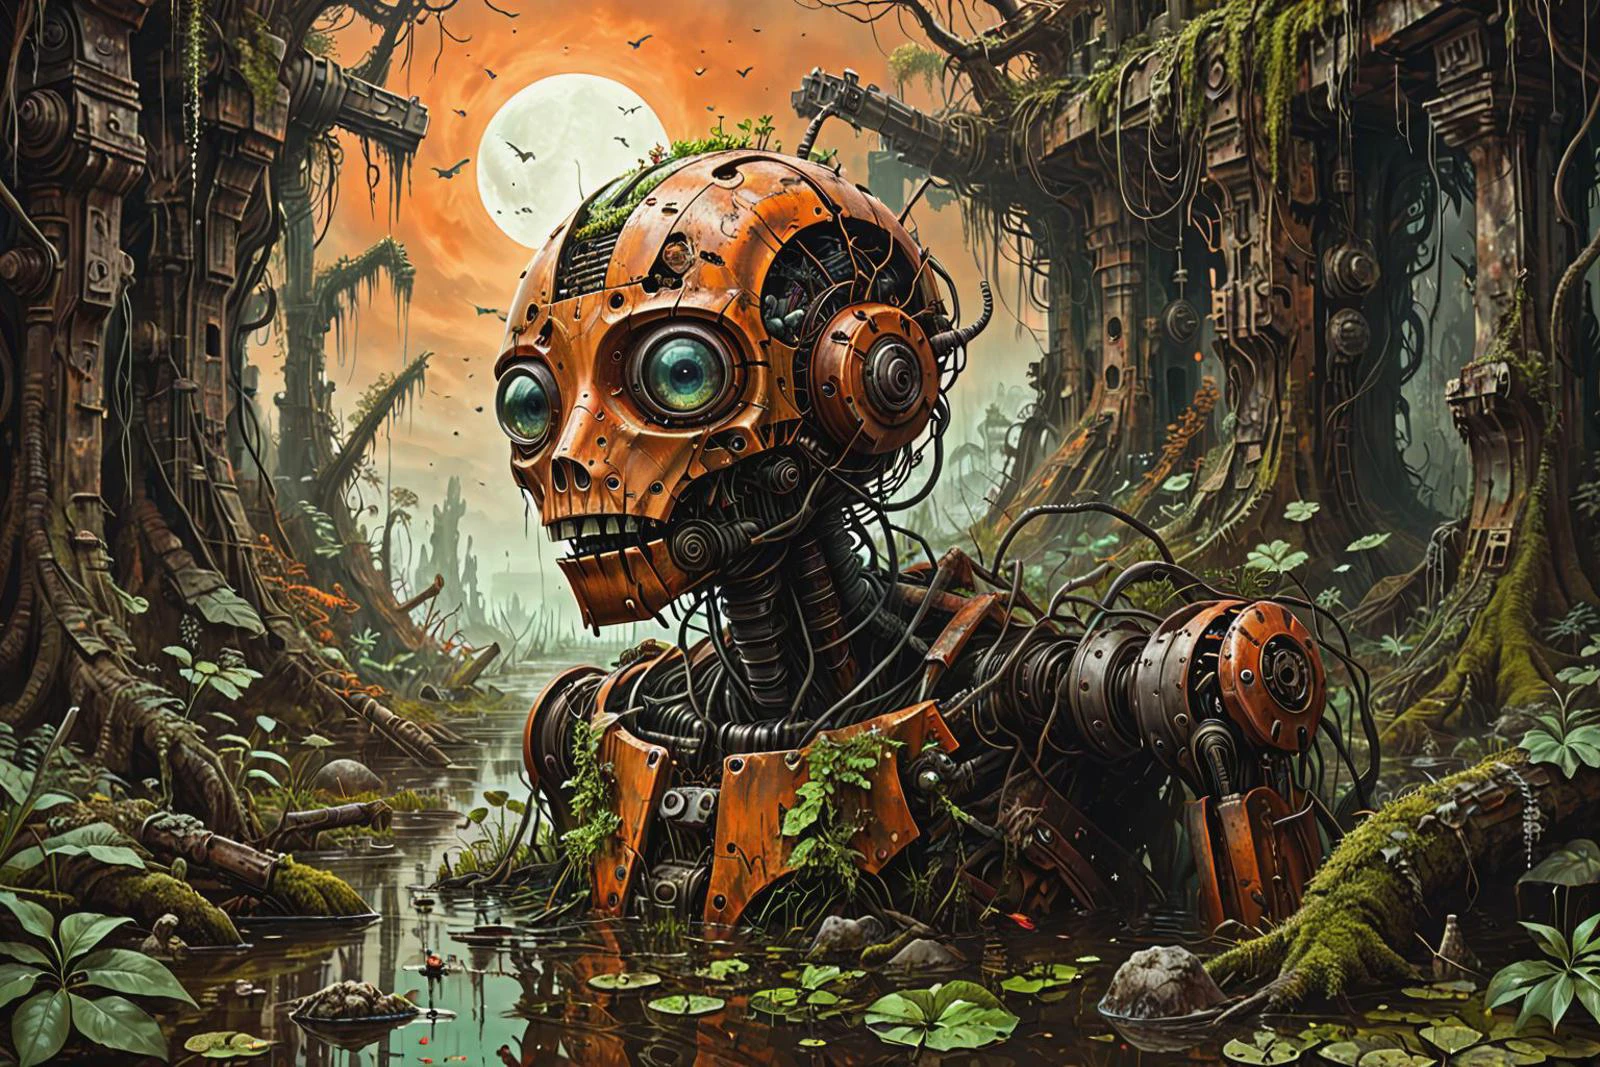 una vívida ilustración de ciencia ficción de un fantástico y surrealista robot de guerra roto, oxidado y cubierto de maleza, ahogado en un pantano, armas destruidas, maquinaria, musgo, Hojas, árboles, selva, dark-orange sky,
 ilusión izquierda